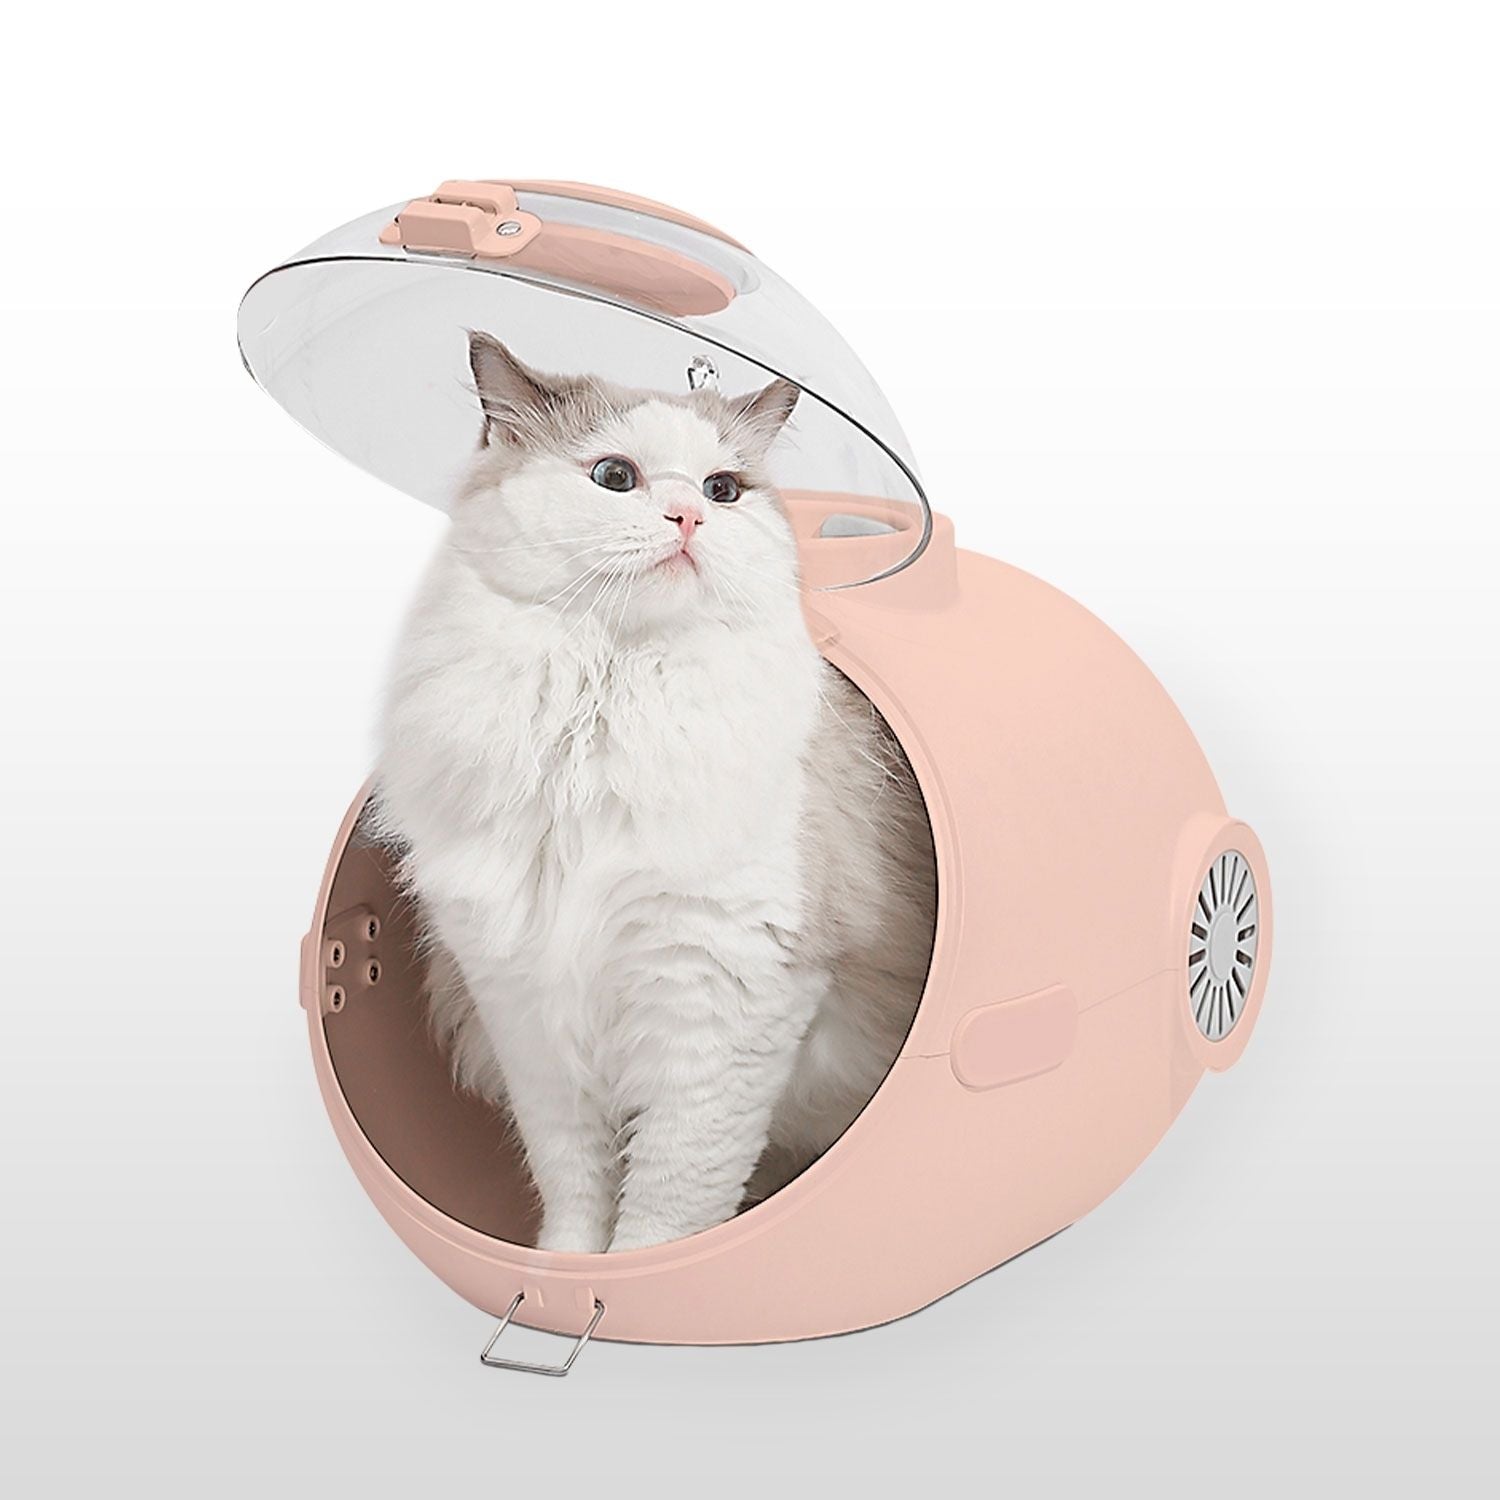 FLOOFI Smart Pet Carrier (Pink) FI-PC-142-AW - SILBERSHELL